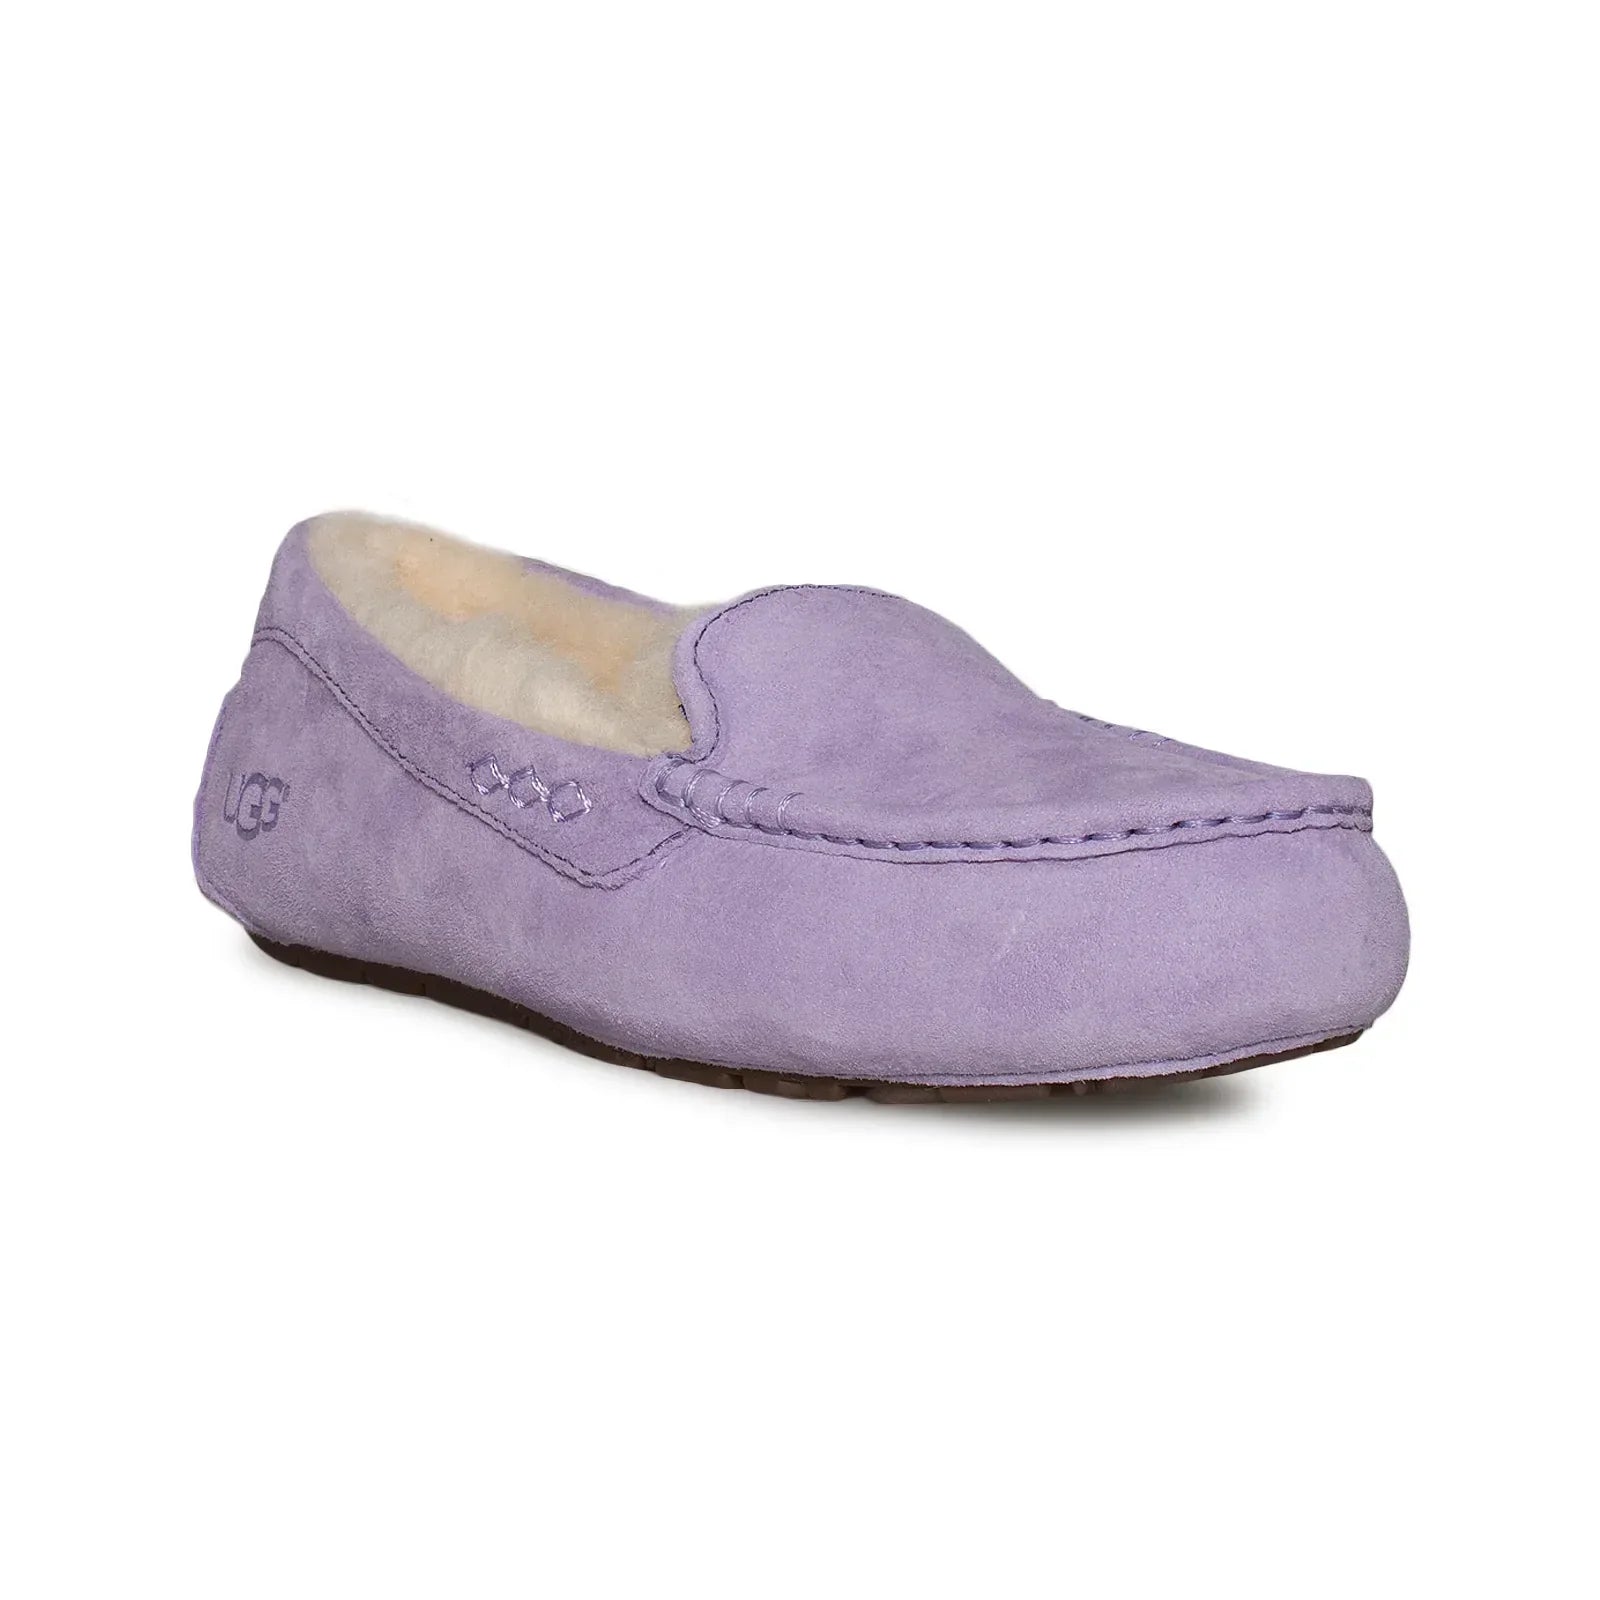 UGG Ansley Purple Zen Slippers - Women's